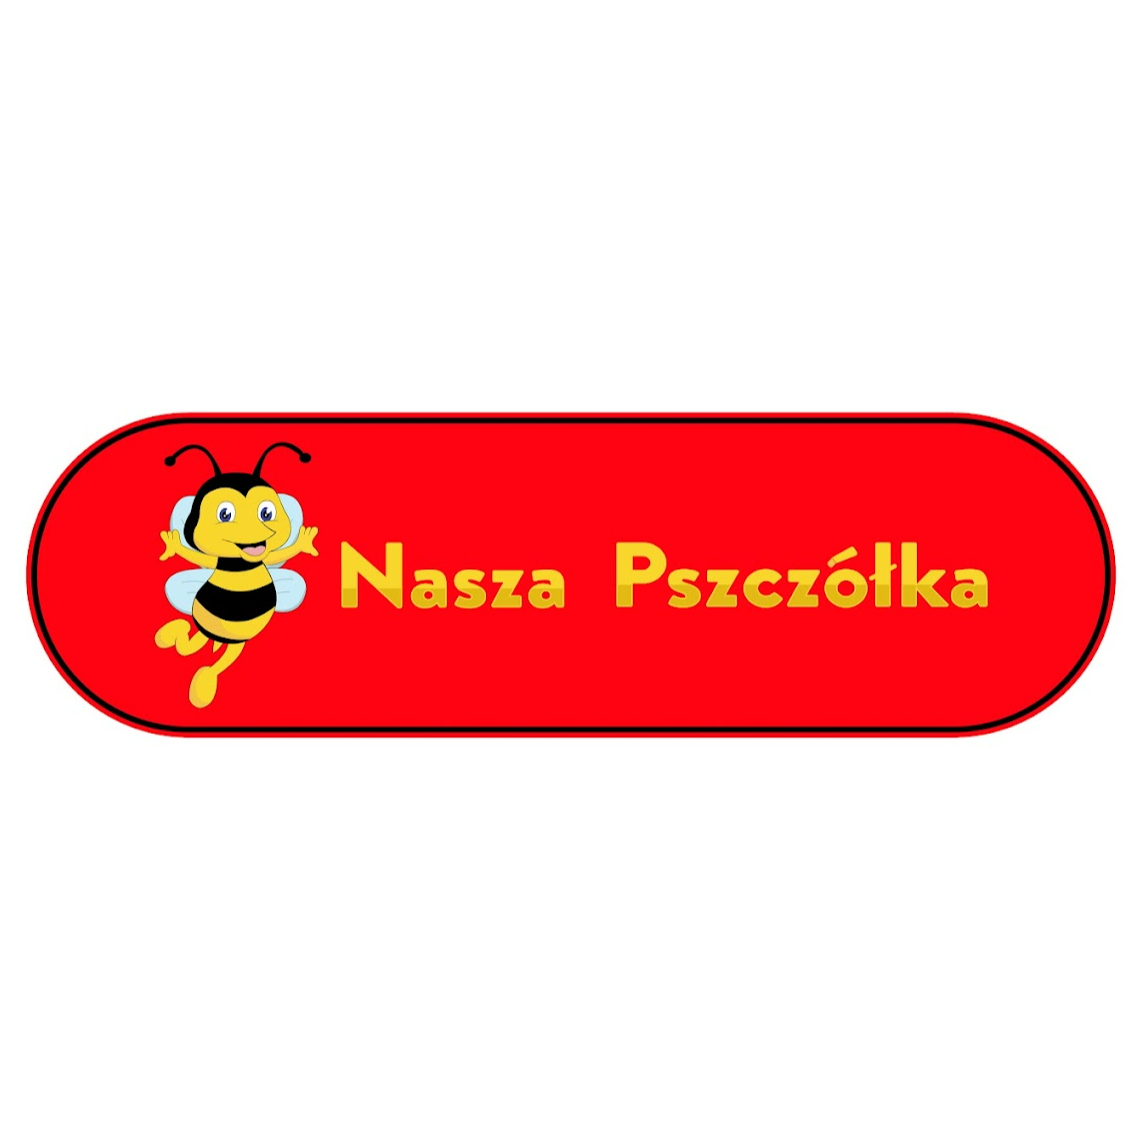 Nasza Pszczolka in Gelsenkirchen - Logo